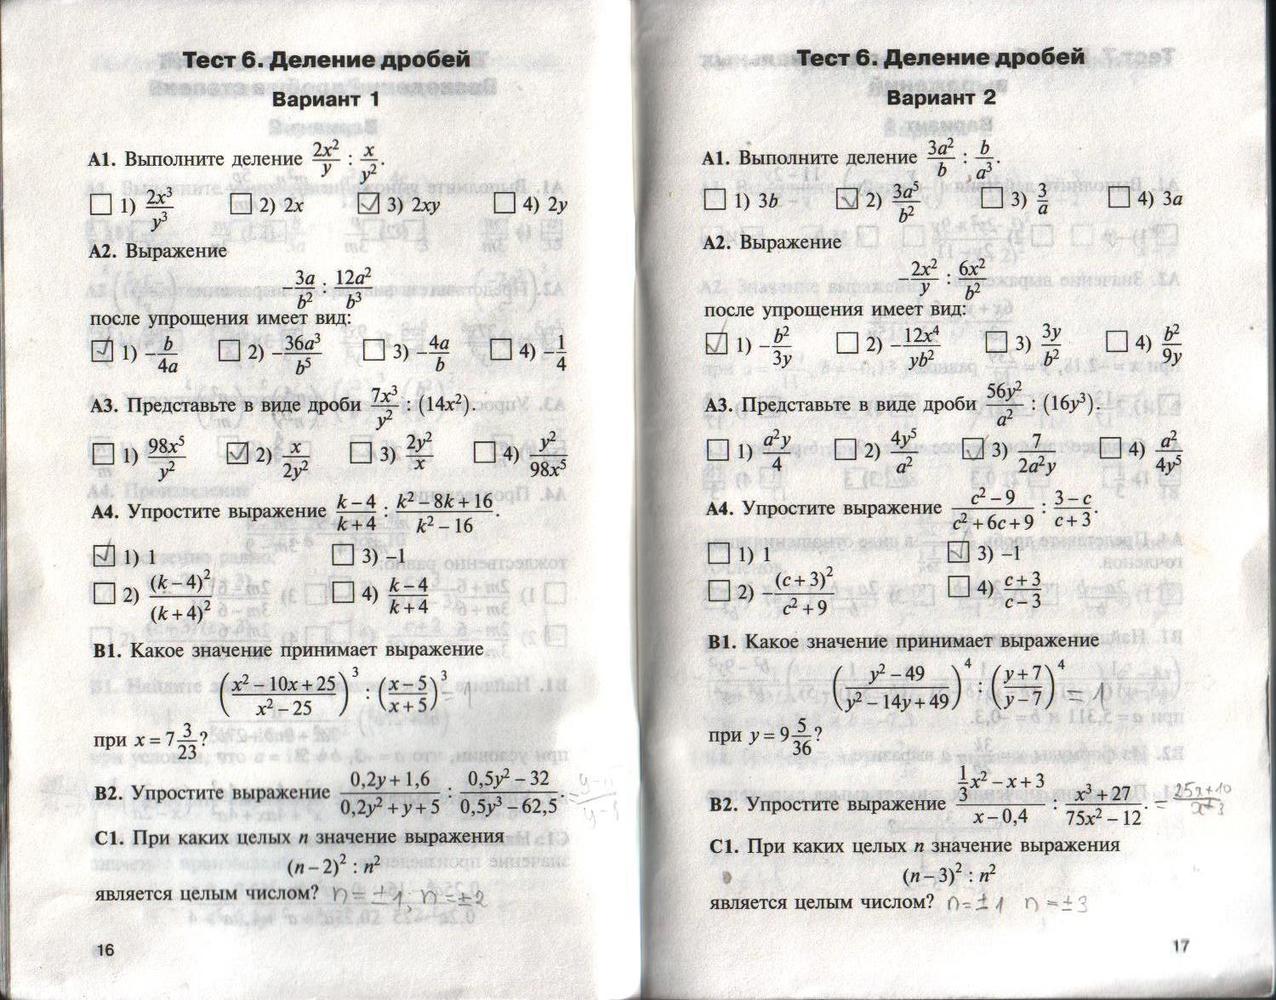 Кимы тест 1. Контрольные работы по алгебре 8 класс а1 а2 б1 б2. Контрольно измерительные материалы 10 класс Алгебра. Контрольно измерительные материалы 11 класс Алгебра.